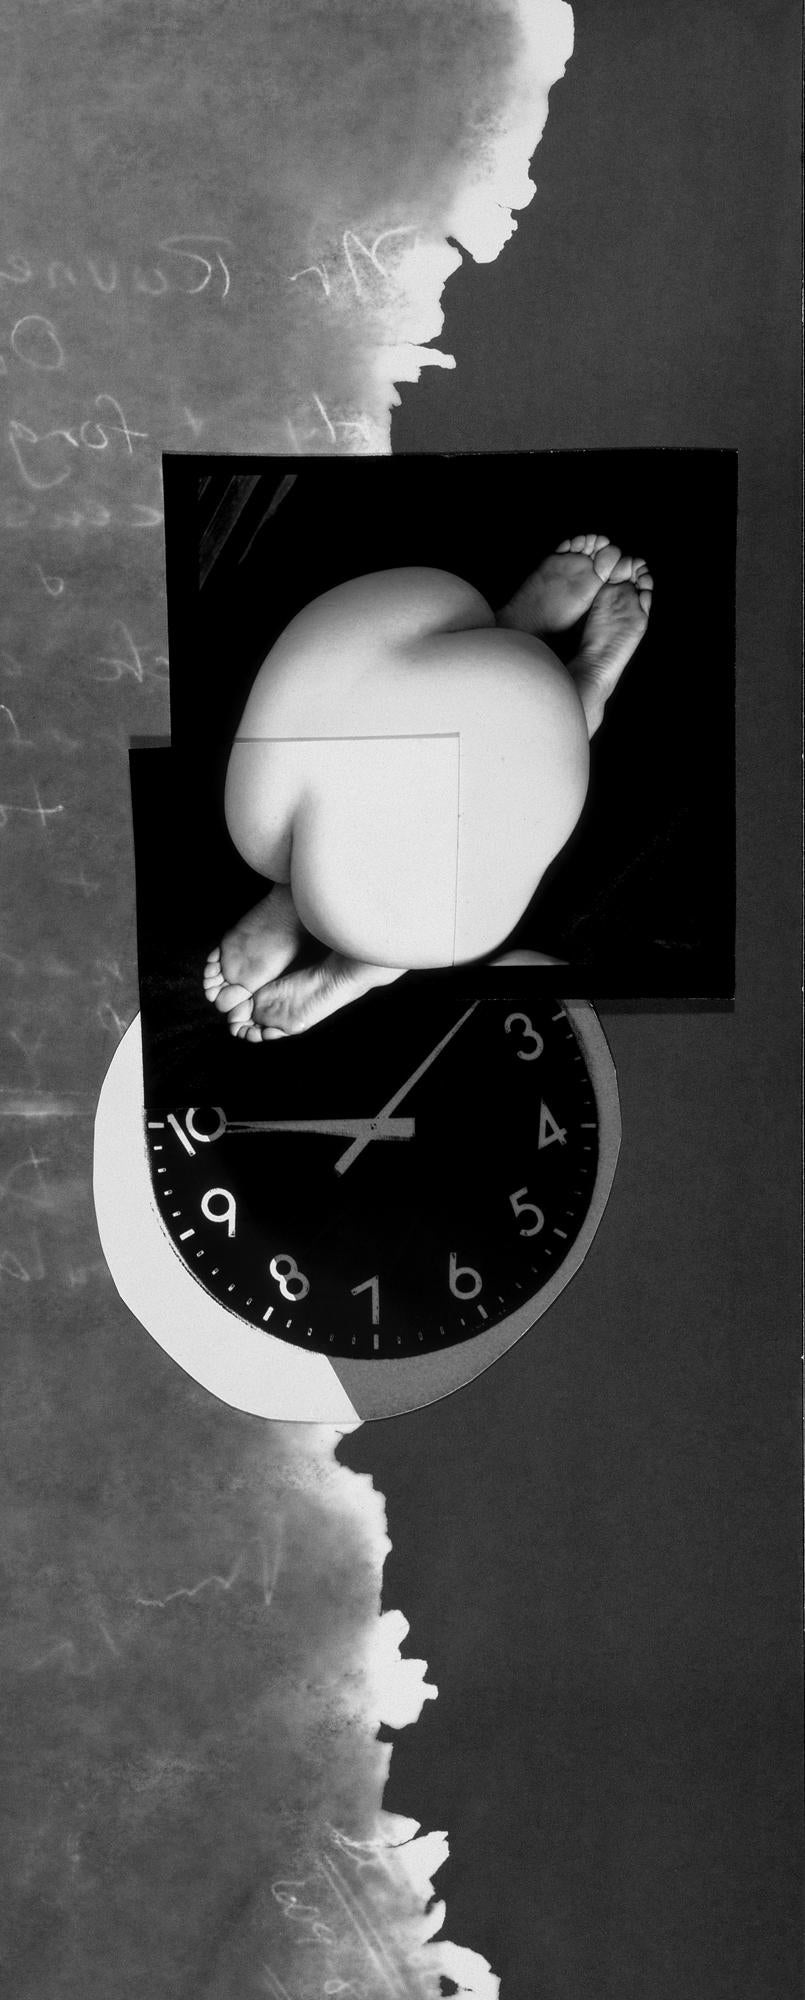 Serre-partout double : collage de photos abstraites encadrées en noir et blanc avec nus, horloge et nus